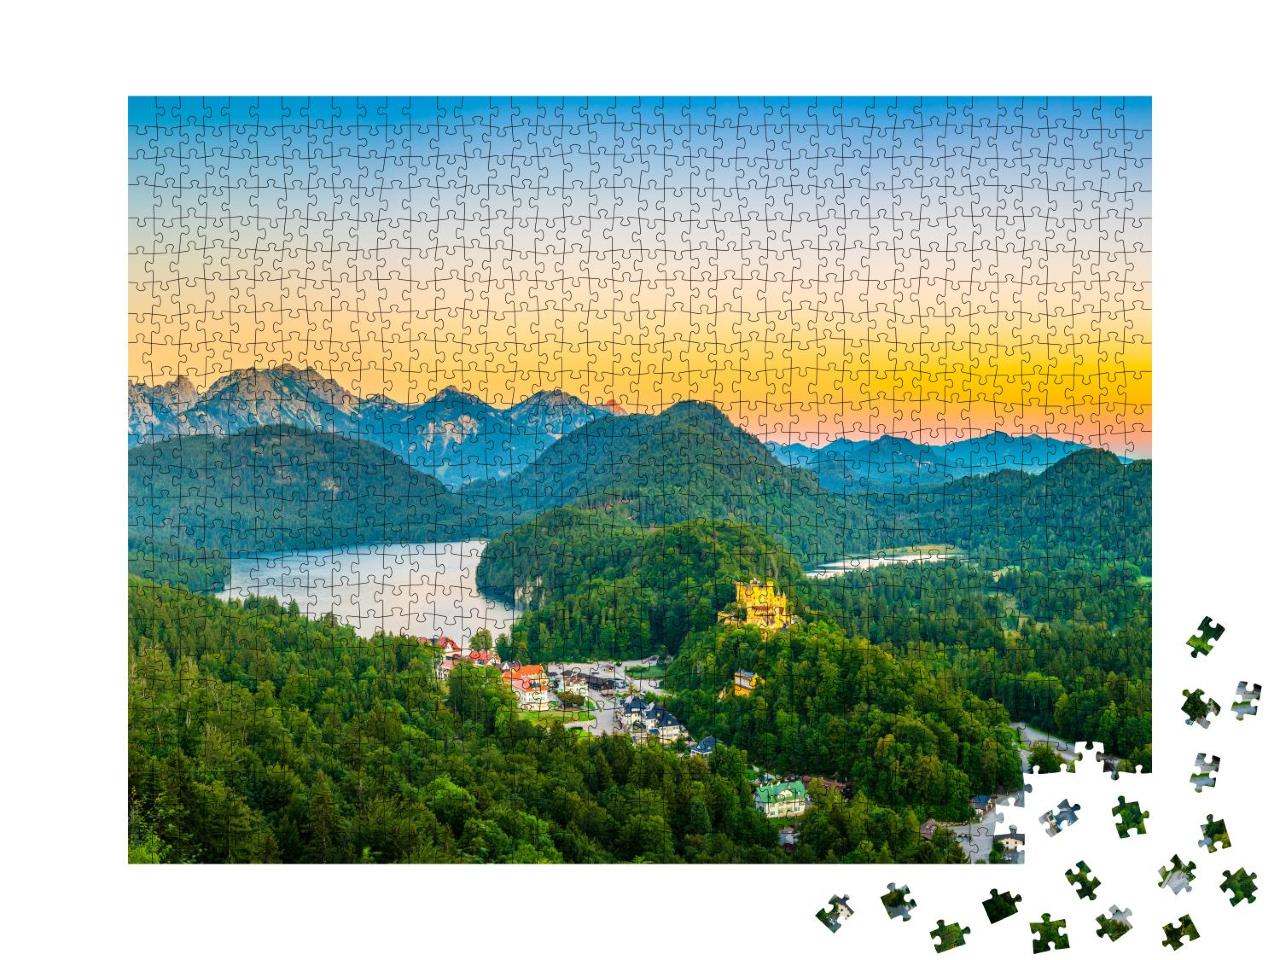 Puzzle 1000 Teile „Alpsee mit Schloss Hohenschwangau bei Sonnenaufgang, Bayern, Deutschland“